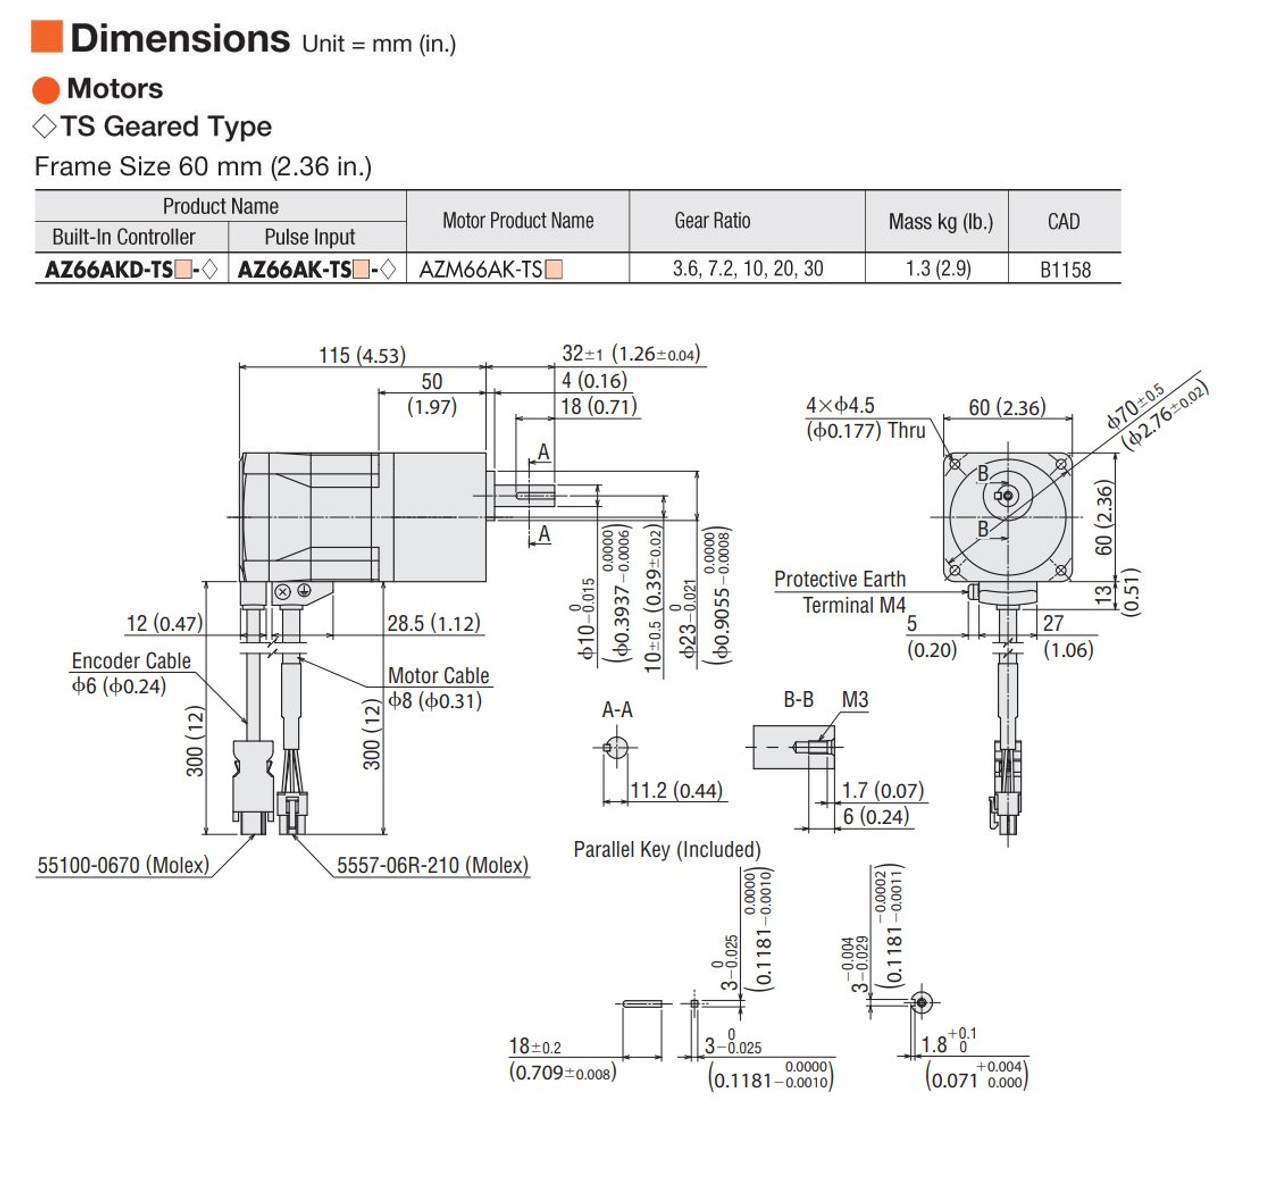 AZ66AK-TS20-3 - Dimensions